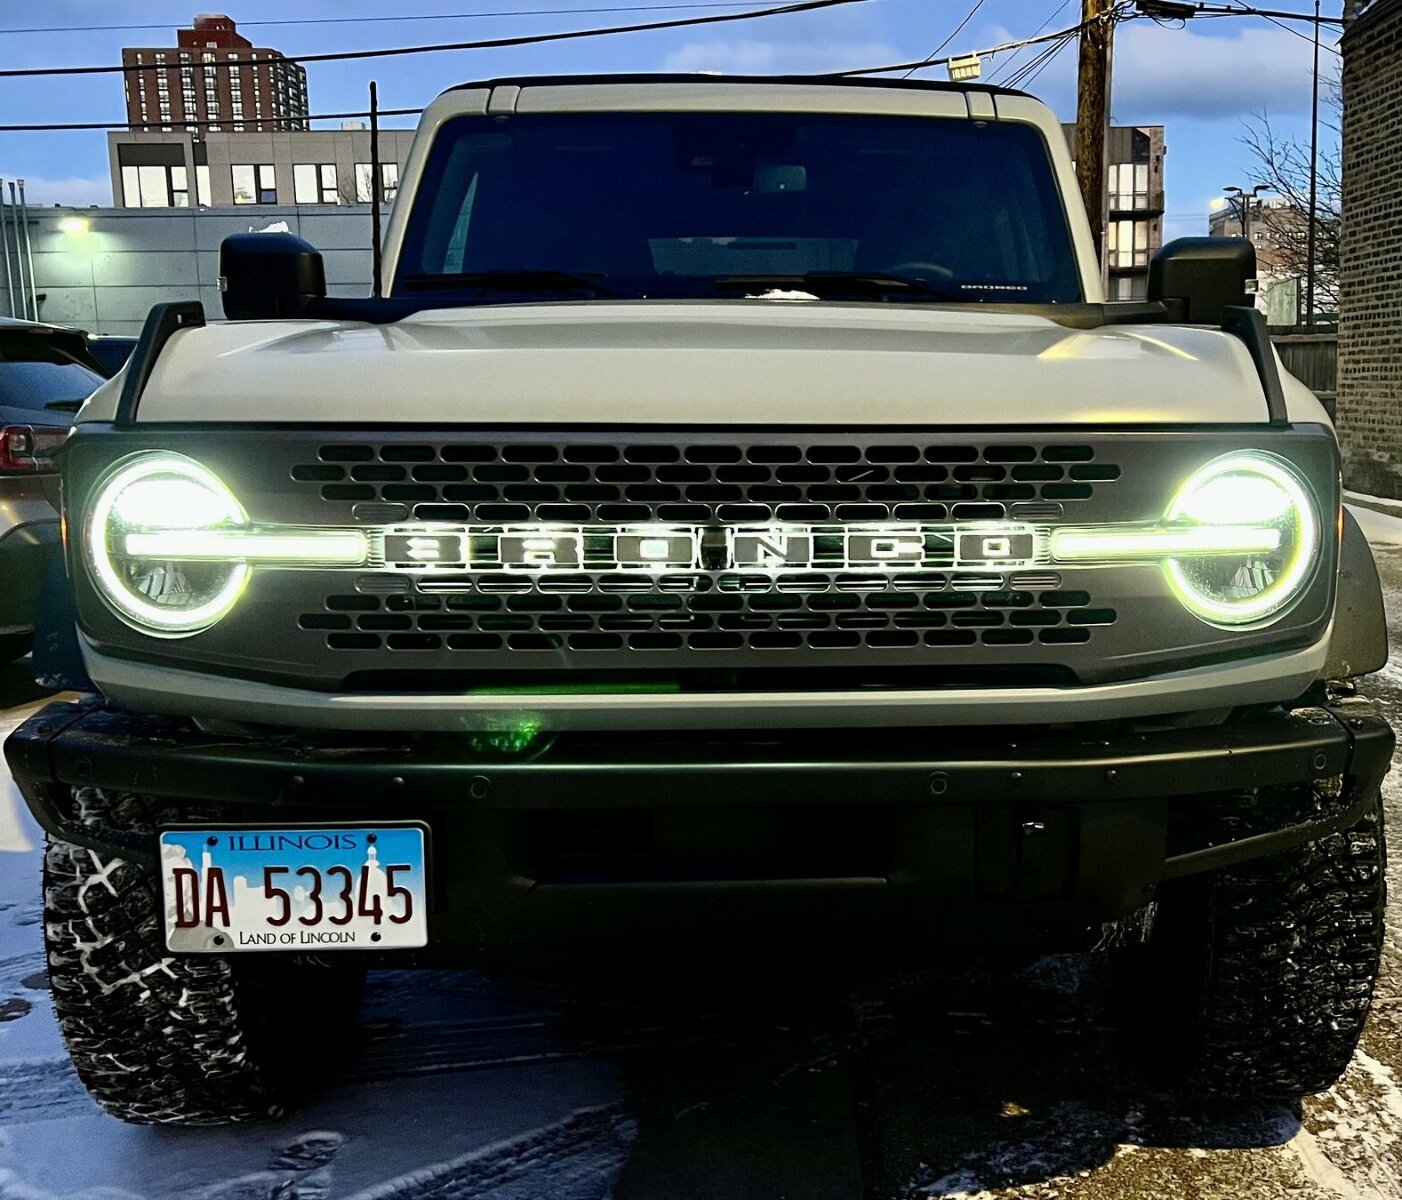 ORACLE Lighting 3140-U-001 Fits 2021-2023 Ford Bronco Universal Illuminated LED Letter Badges - Matte White Surface Finish - U